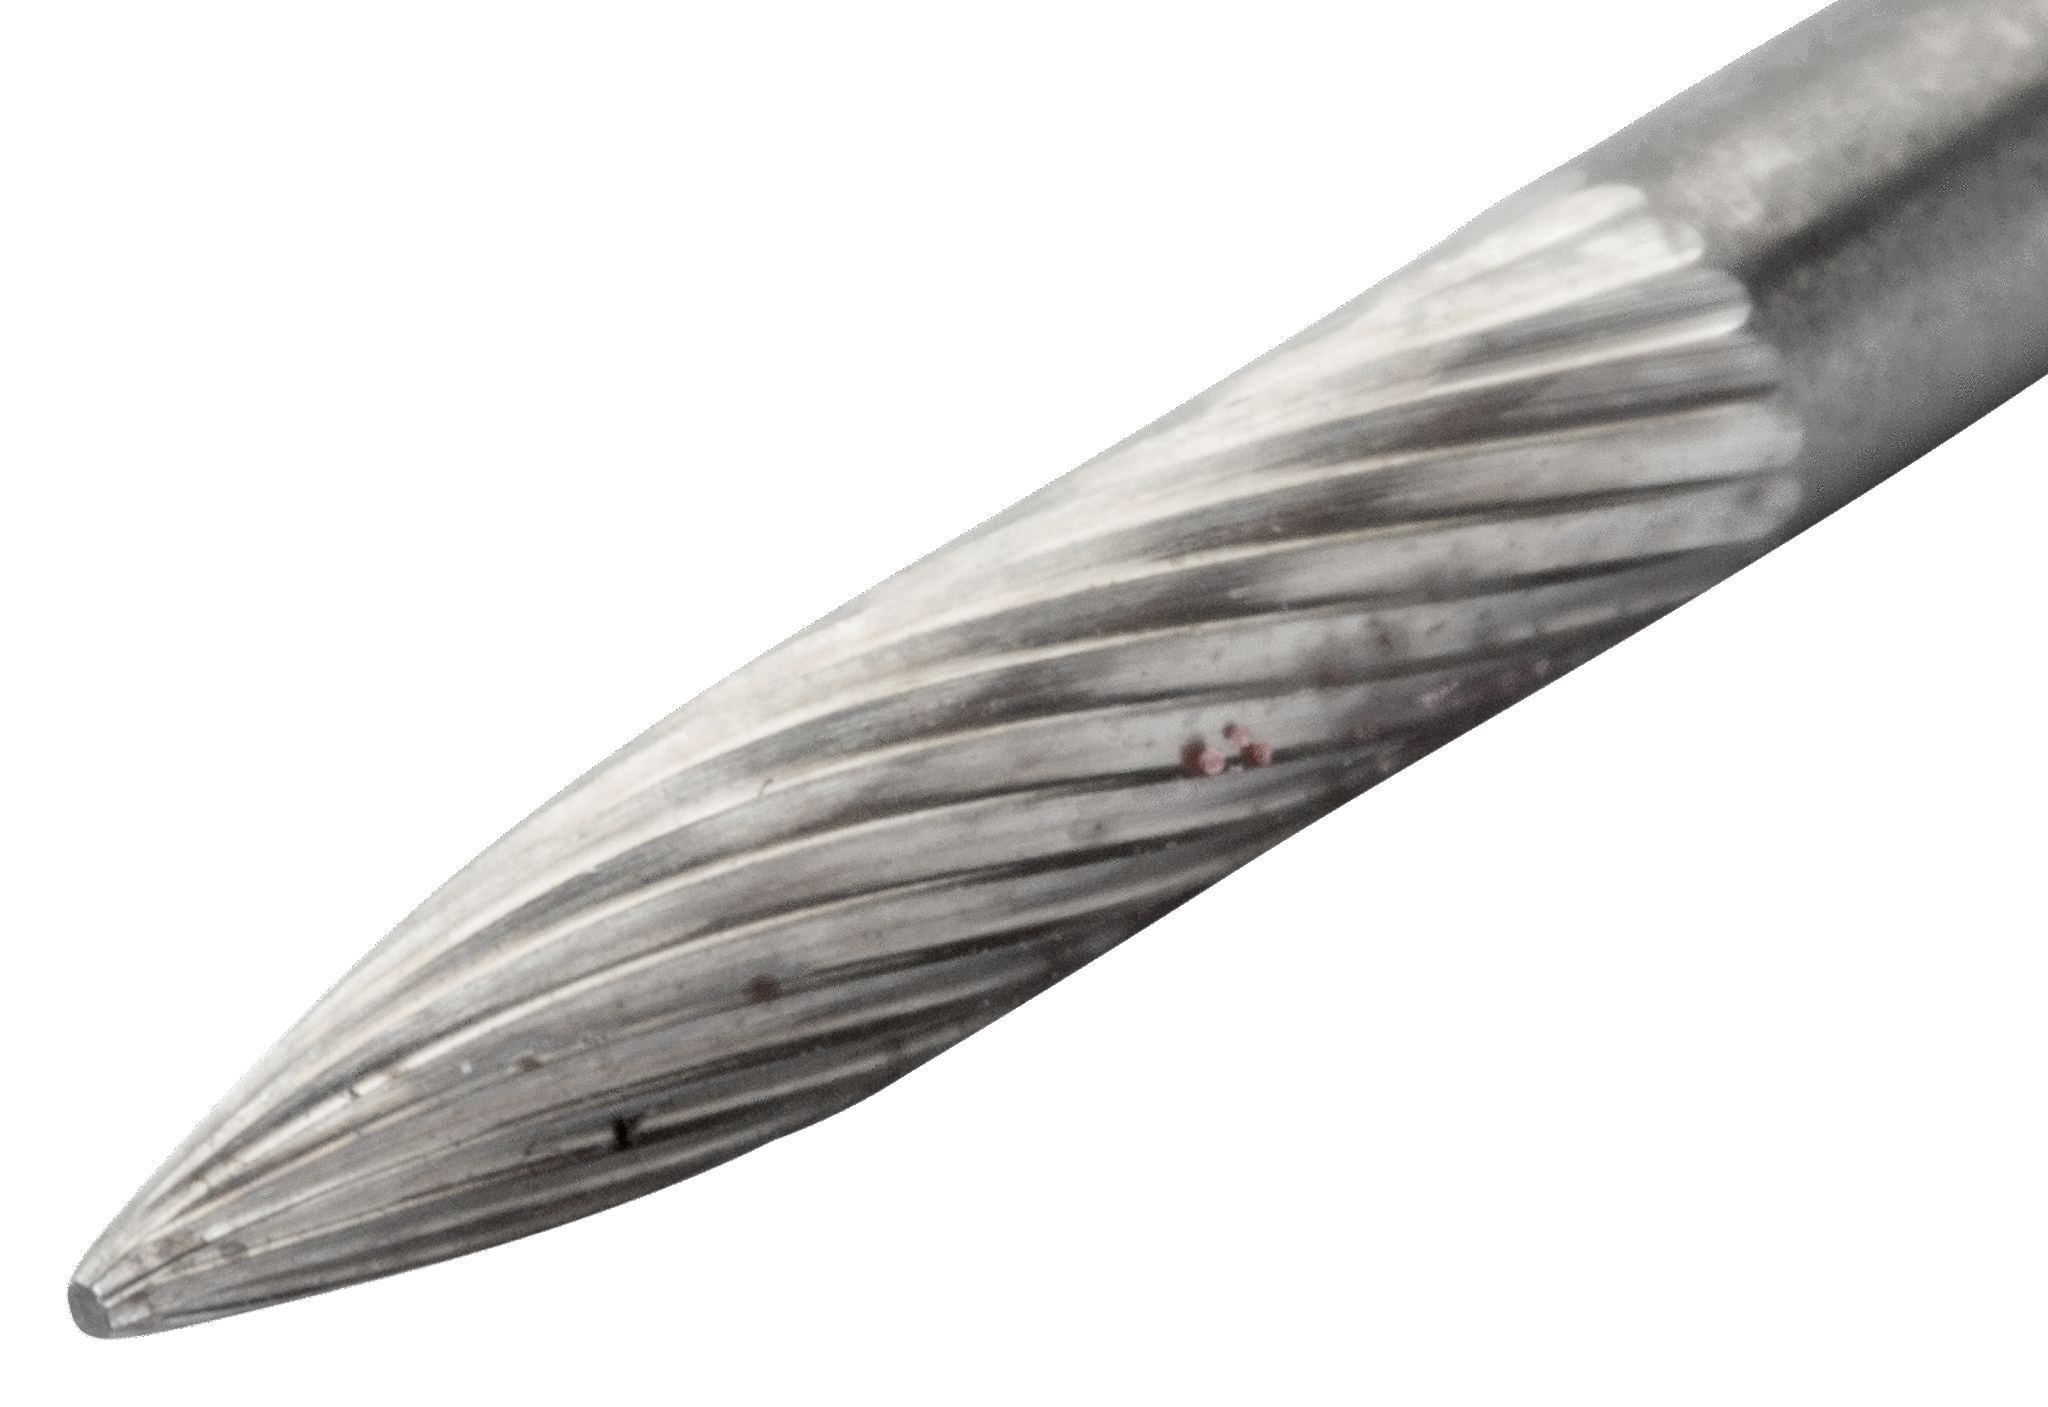 картинка Твердосплавные борфрезы с древовидной заостренной головкой BAHCO G1625M08X от магазина "Элит-инструмент"